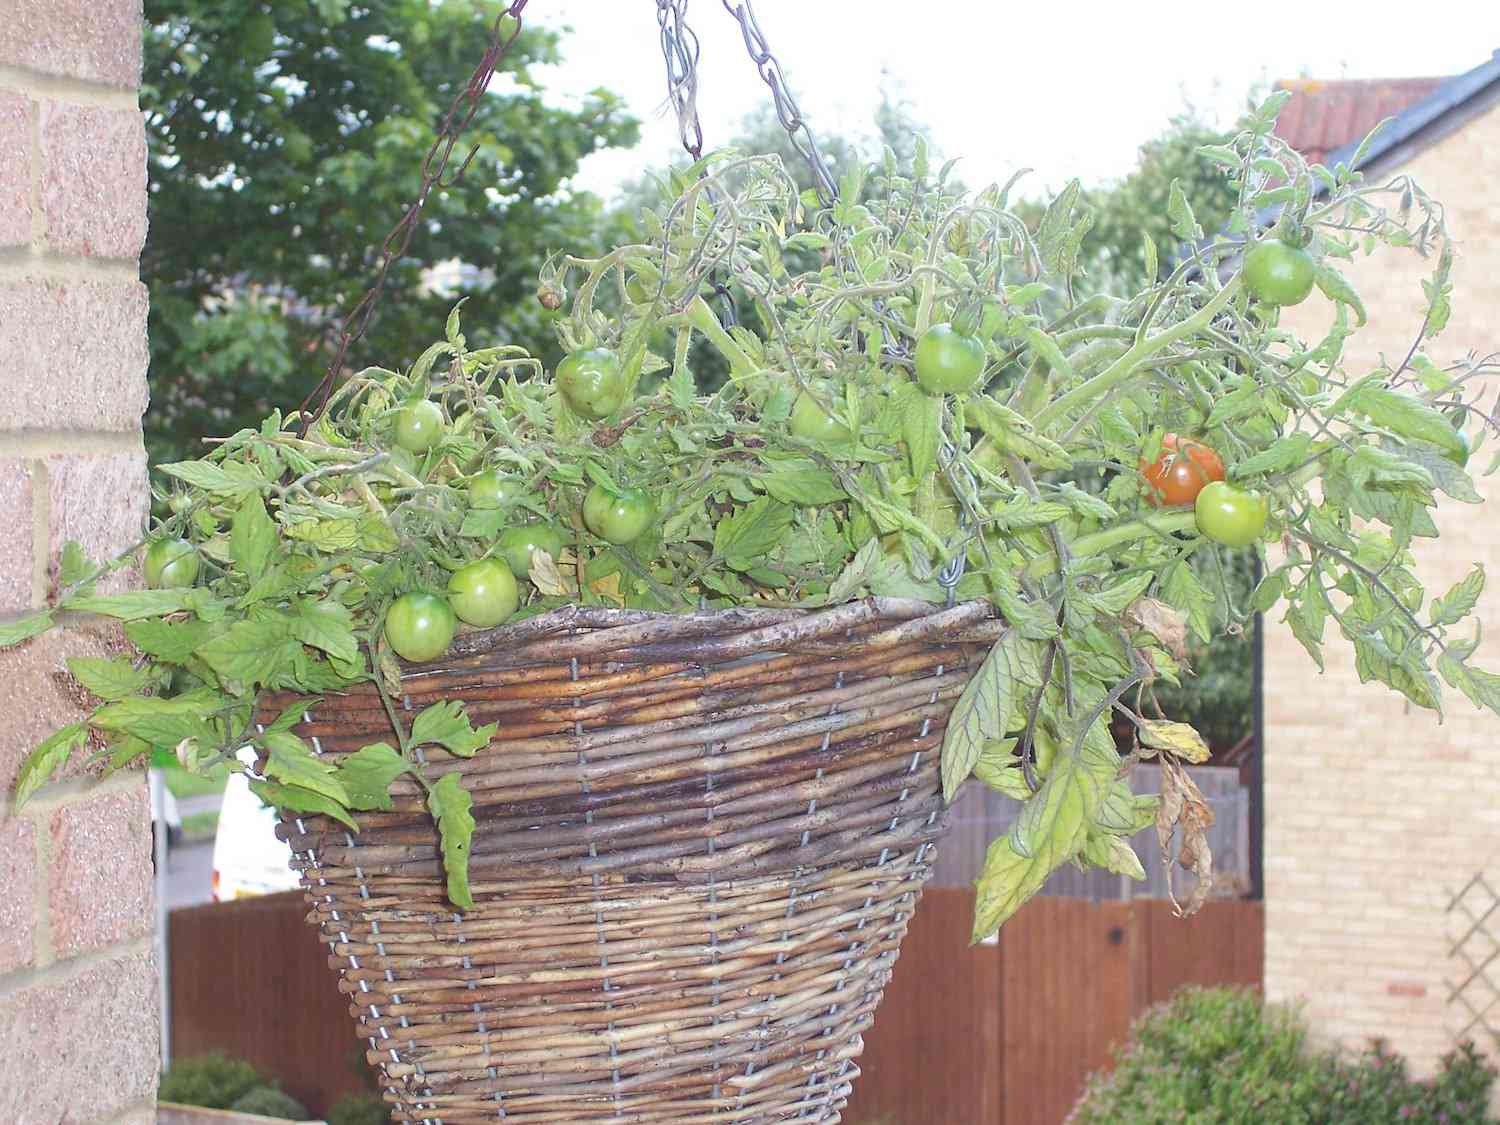 一棵樱桃番茄的叶子和藤蔓从一个悬挂的编织篮的边缘落下